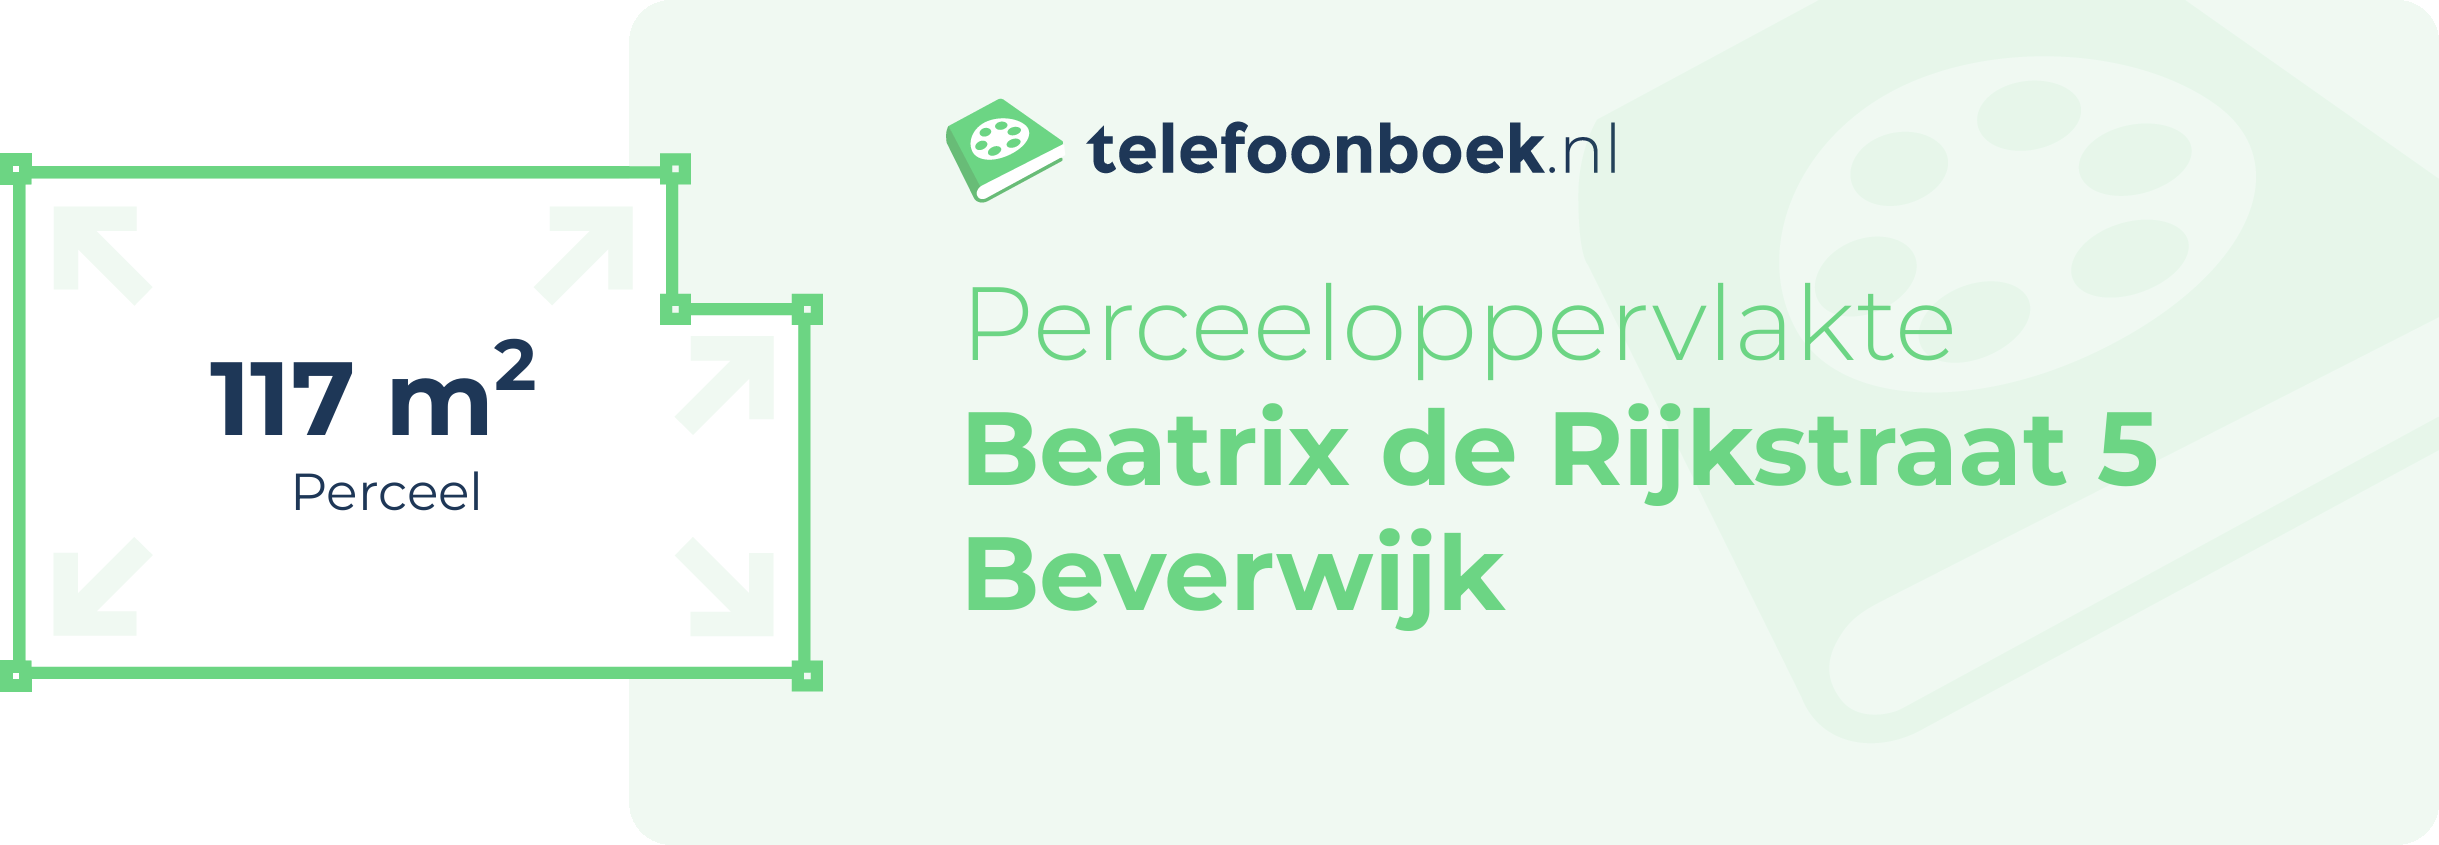 Perceeloppervlakte Beatrix De Rijkstraat 5 Beverwijk